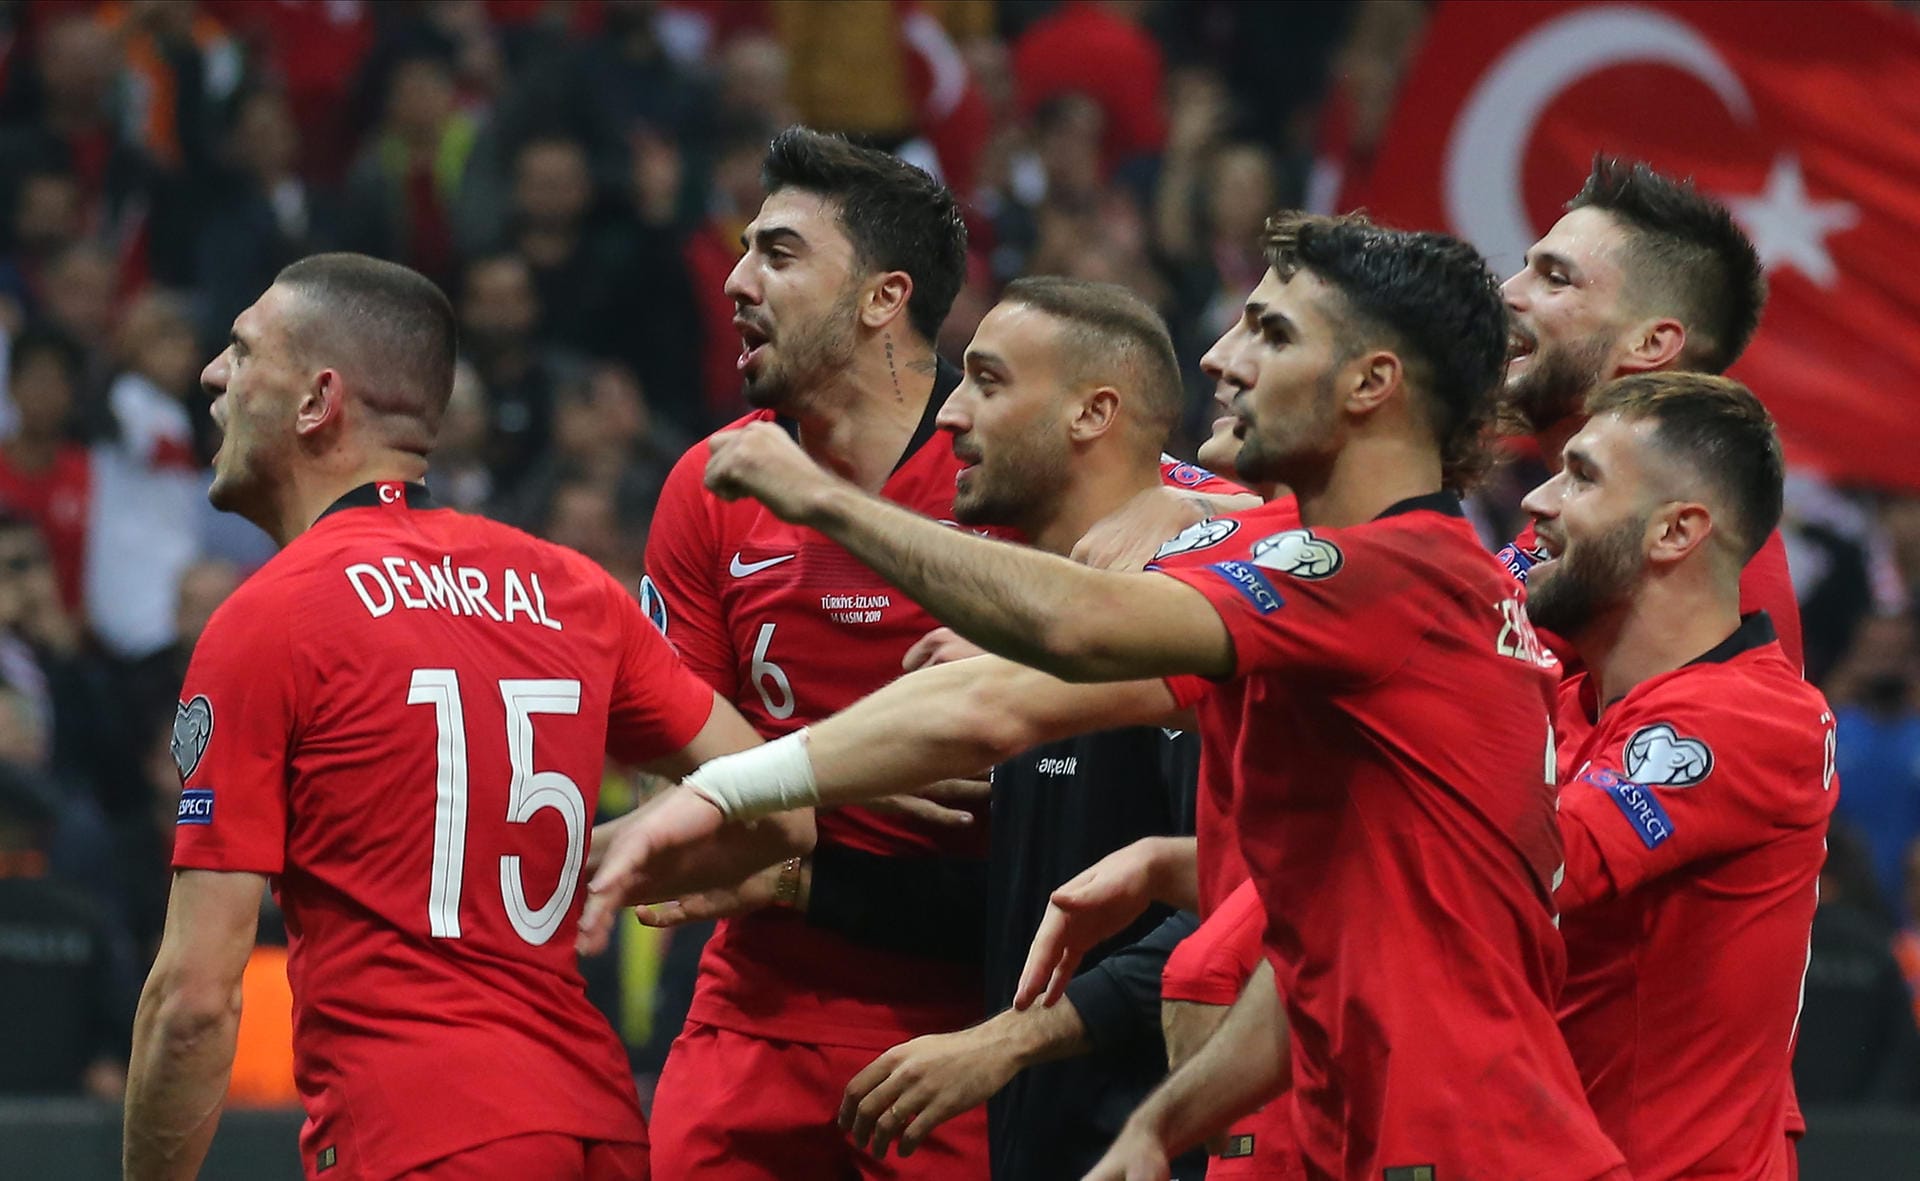 Bei der WM in Russland waren die Türken noch Zuschauer, bei der Europameisterschaft sind sie nun wieder mit dabei – und wollen ihren Erfolg von 2008 wiederholen. Vor elf Jahren in Österreich und der Schweiz scheiterten sie erst im Halbfinale (2:3) an Deutschland.